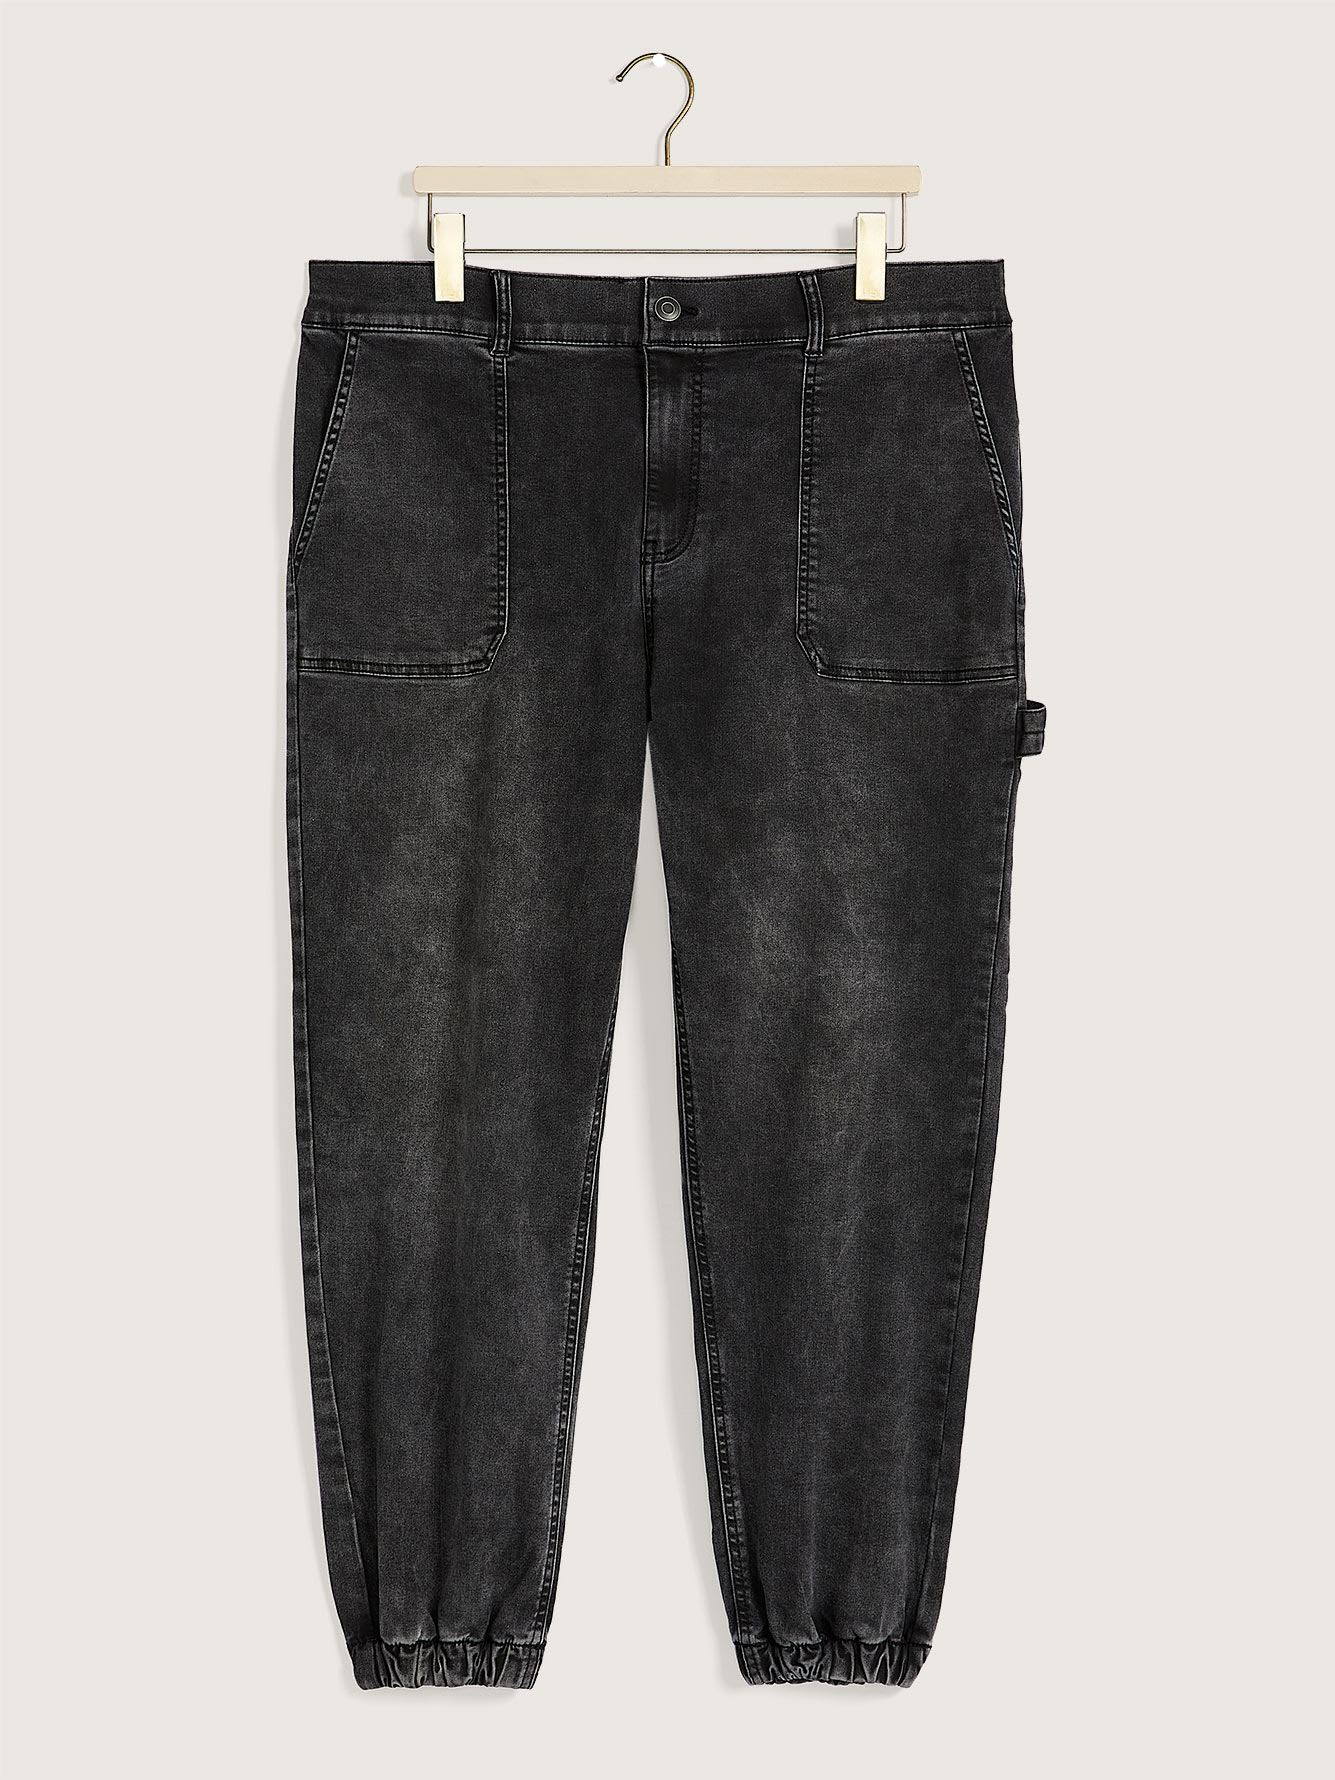 Grey Wash Knit-Like Denim Jogger Pants, 1948 Fit - d/C JEANS